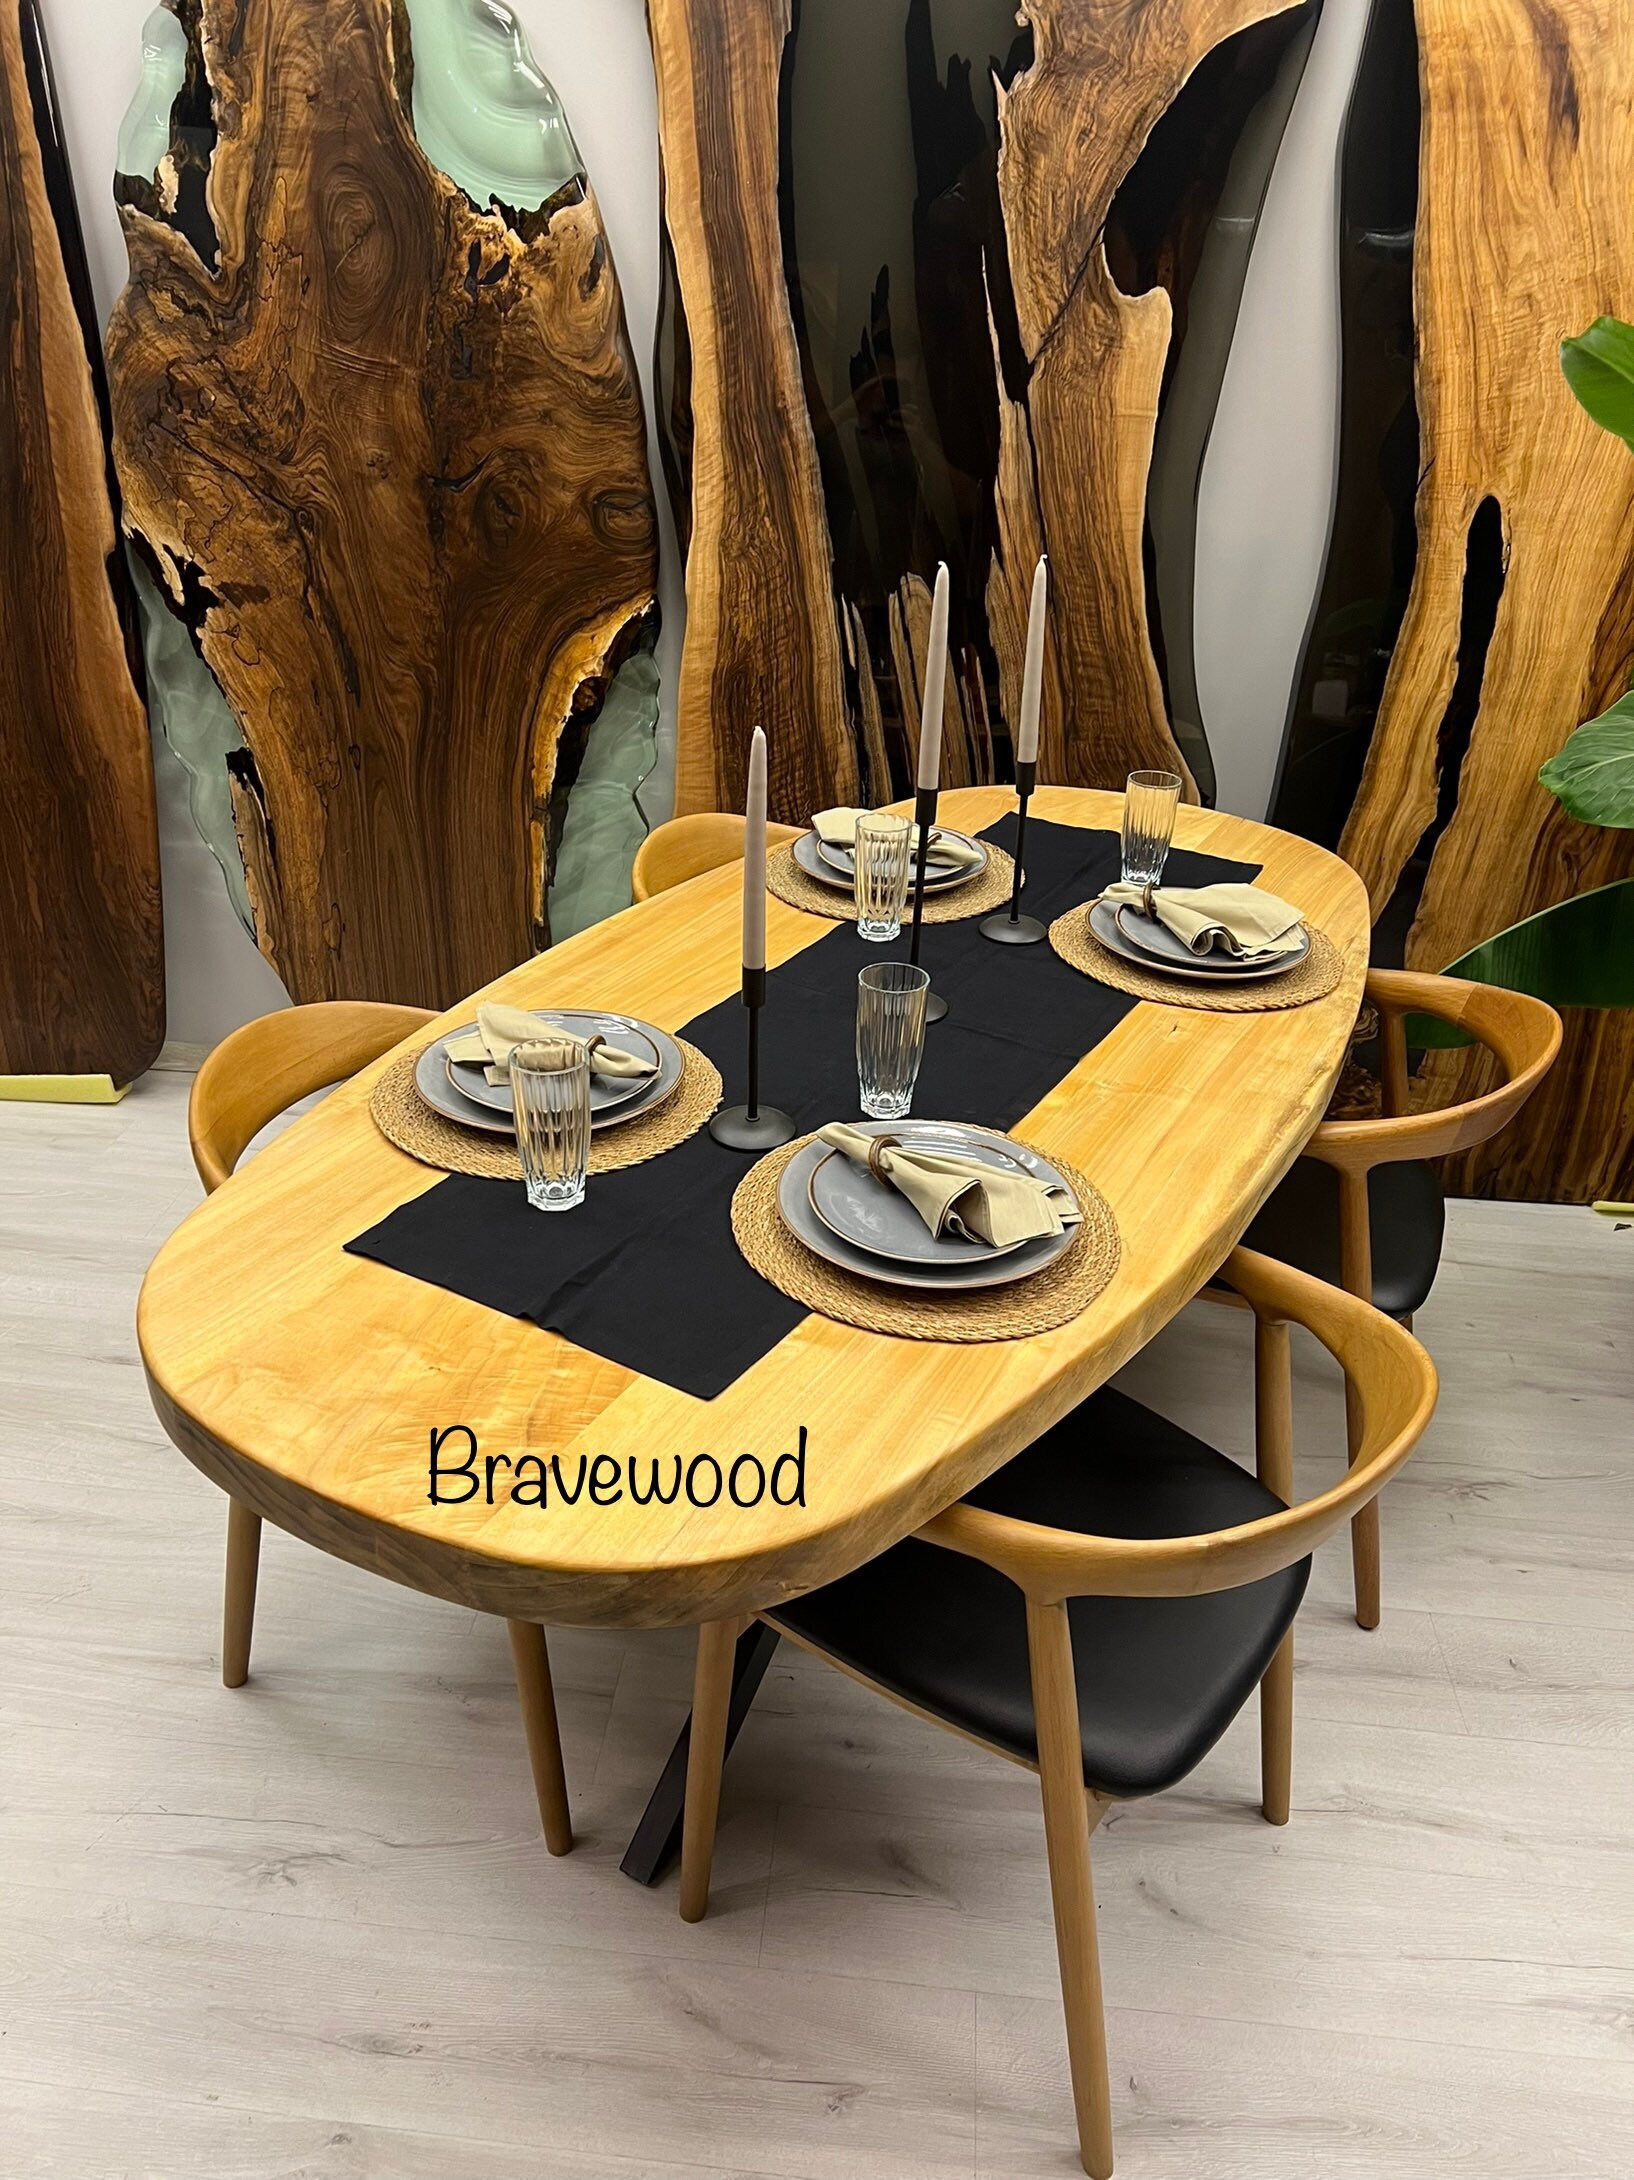 BASCO tavolino ovale 120x60 in legno massello con base dogata design living  casa